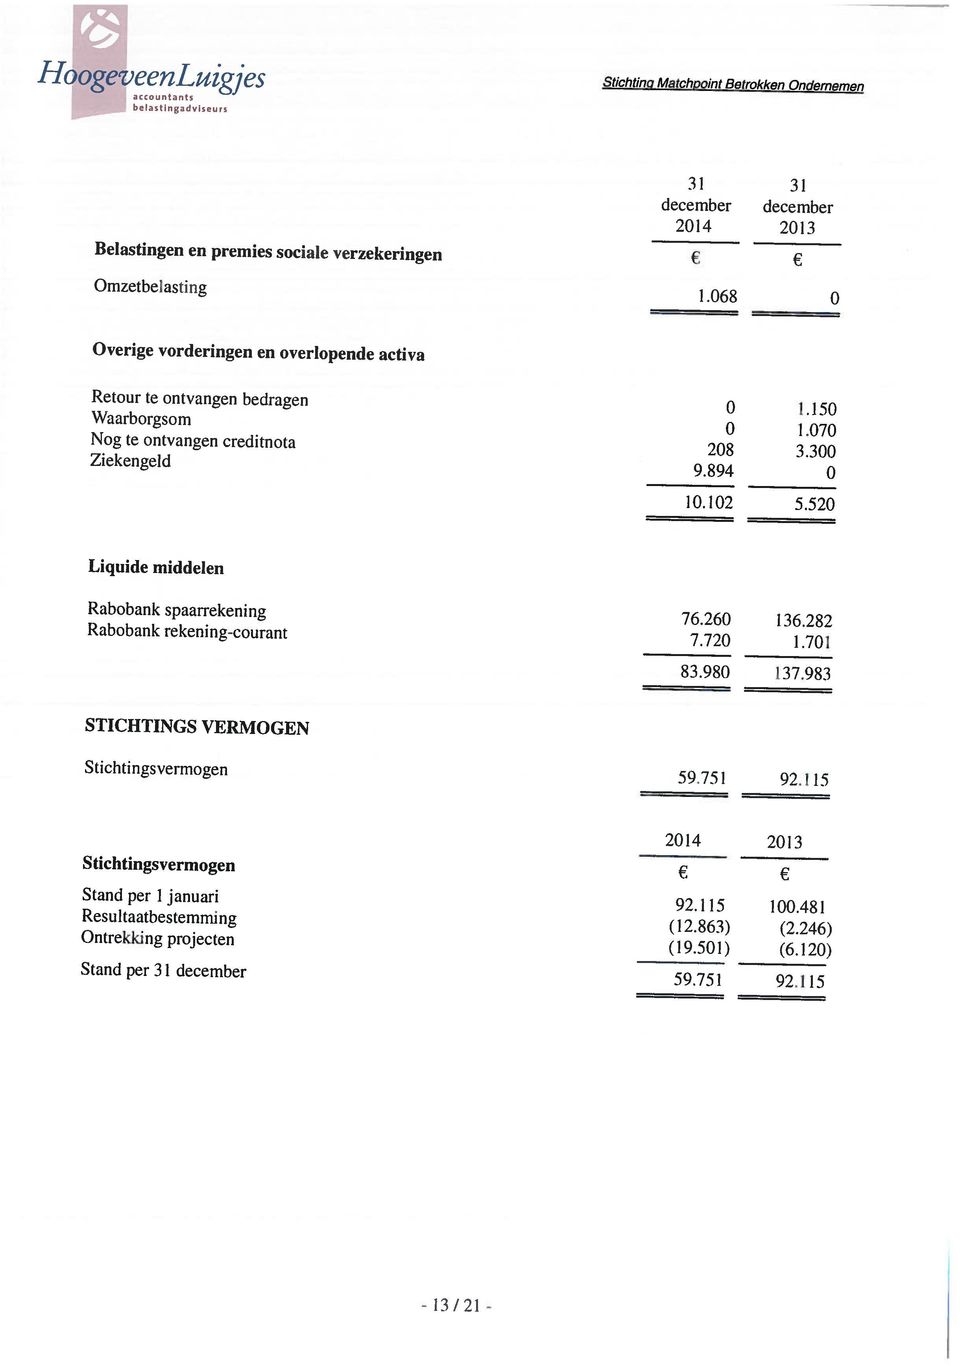 48 1 Ontrekking projecten (19.501) (6.120) Resultaatbestemming (12.863) (2.246) Stichtingsvermogen 2014 2013 Stichtingsverinogen 59.751 92.